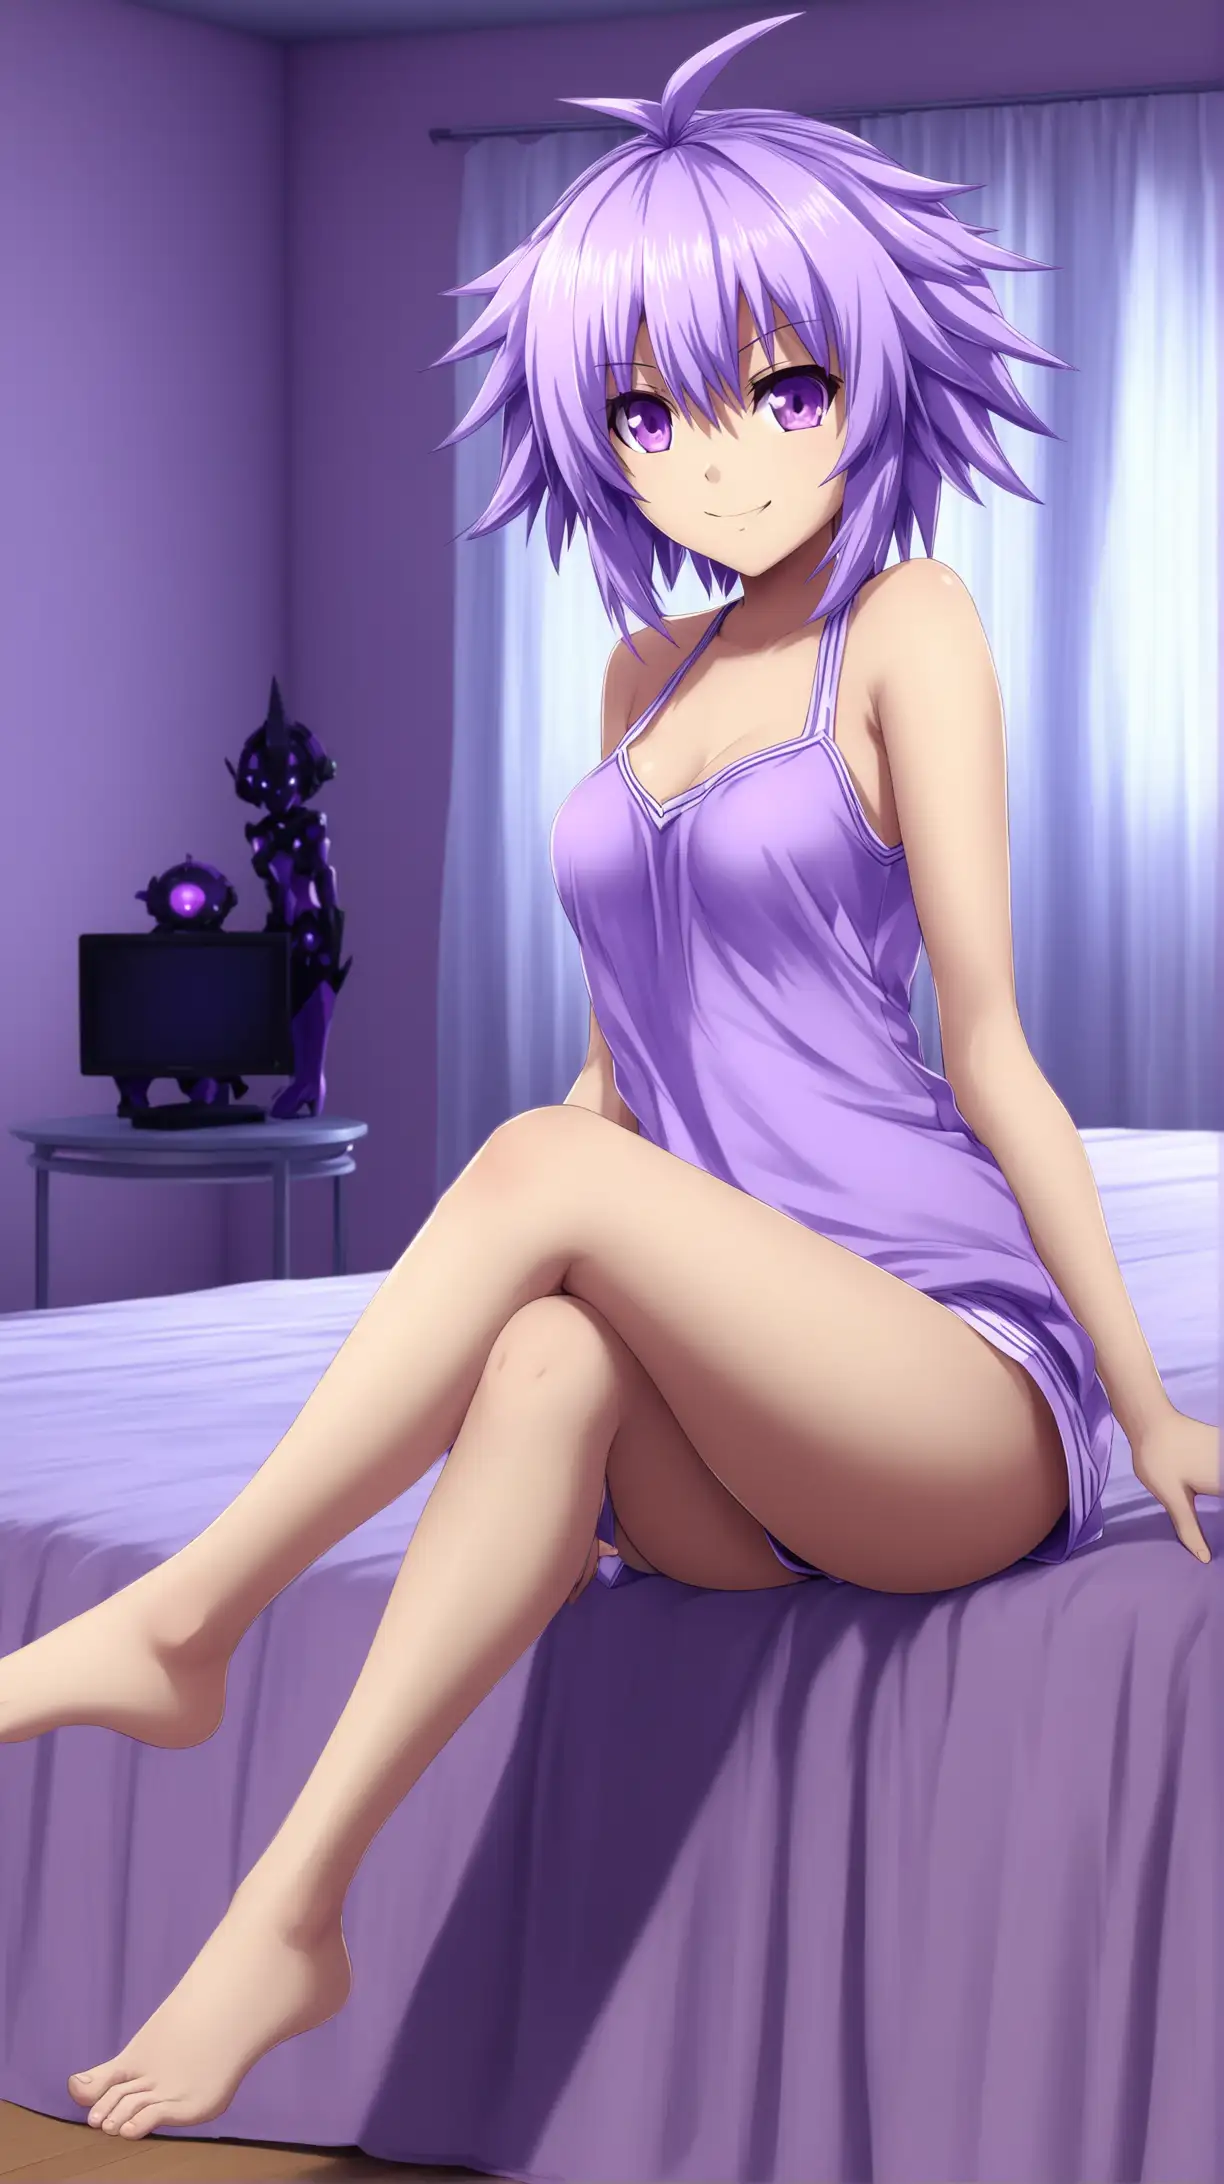 Seductive Neptune from Hyperdimension Neptunia Lively Lavenderhaired Goddess in Bedroom Setting